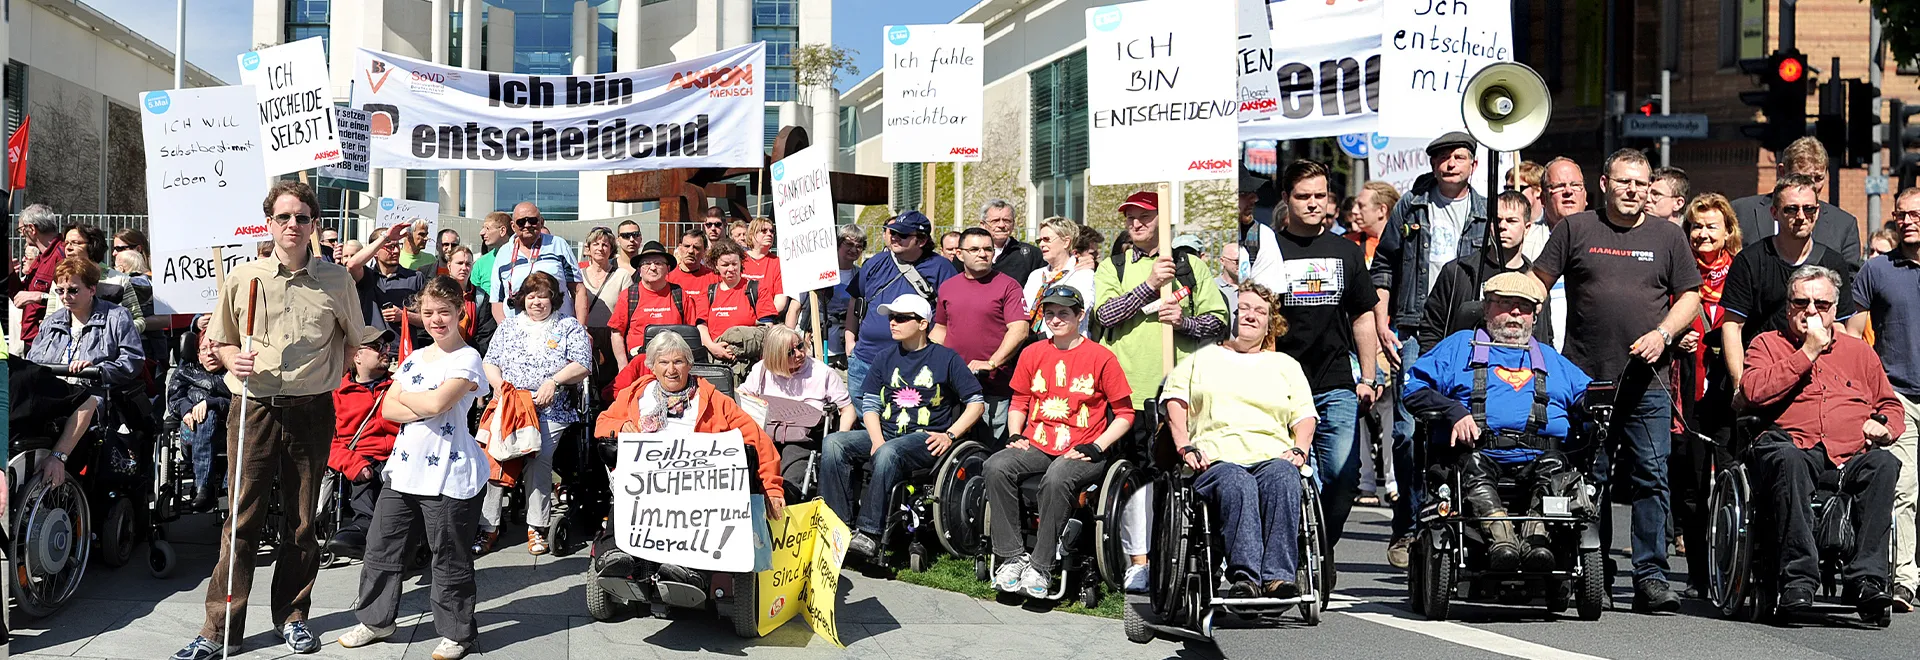 Zahlreiche Menschen mit und ohne Behinderung bei einer Demo.